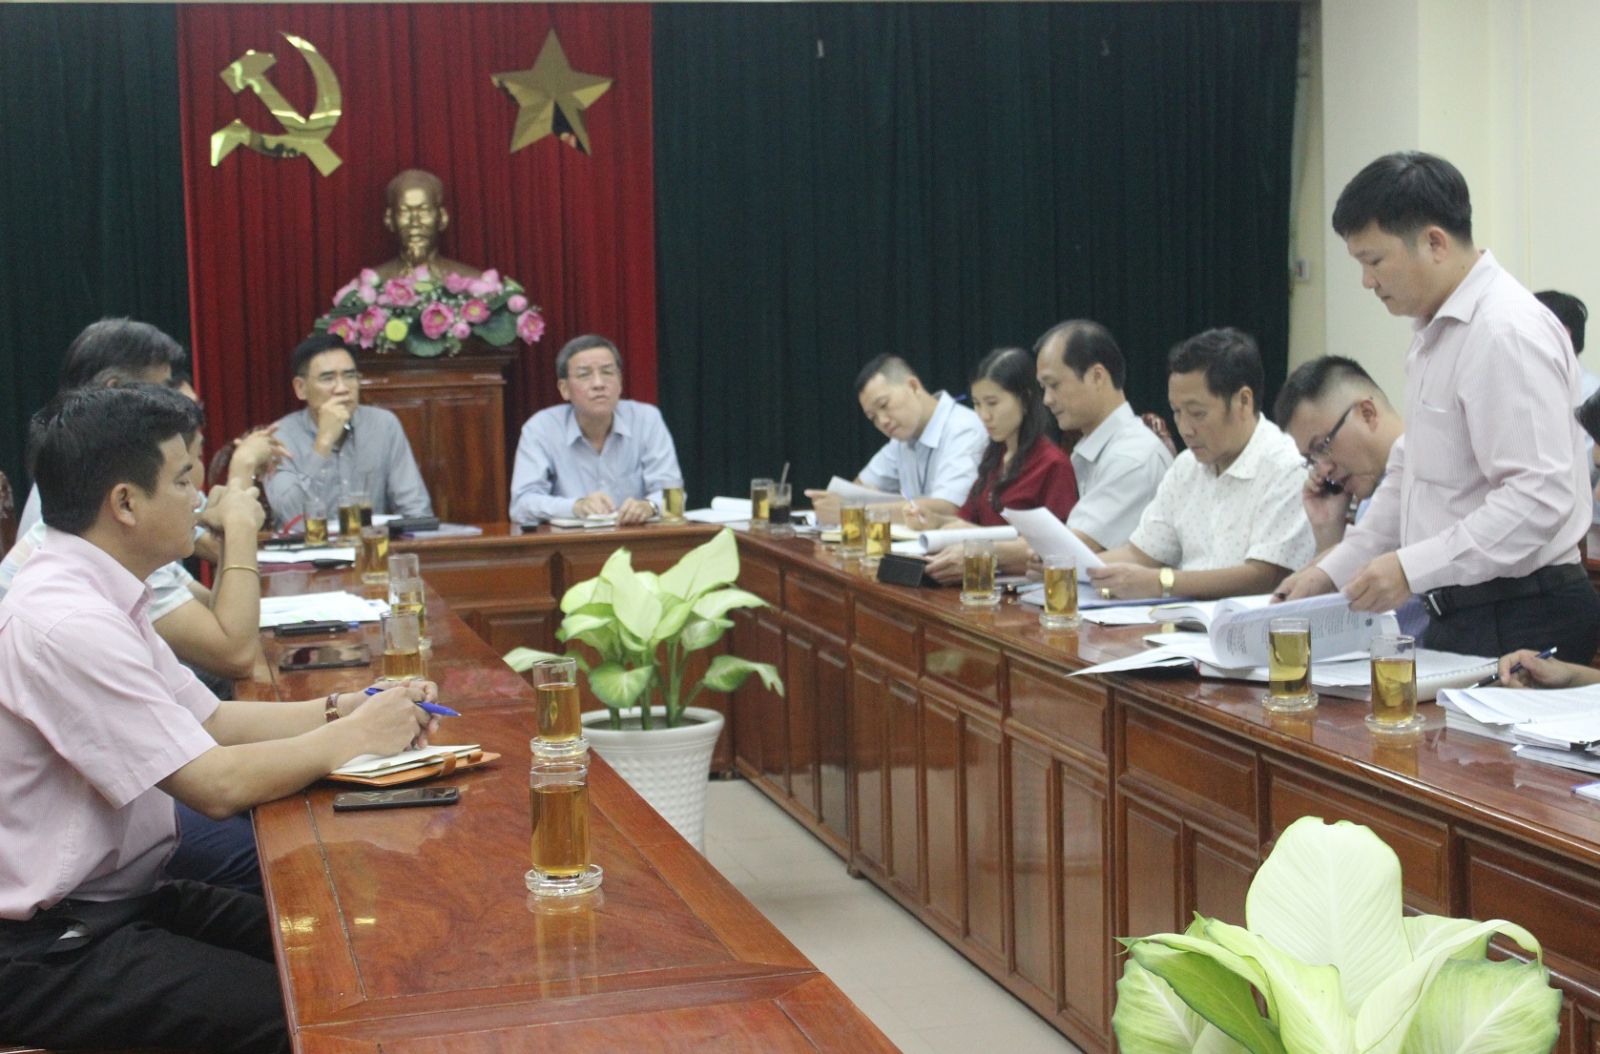 1. Chủ tịch tỉnh Đồng Nai Đinh Quốc Thái yêu cầu các sở ban ngành sớm hoàn thiện hồ sơ dự án để trình Thủ tướng phê duyệt và thực hiện.